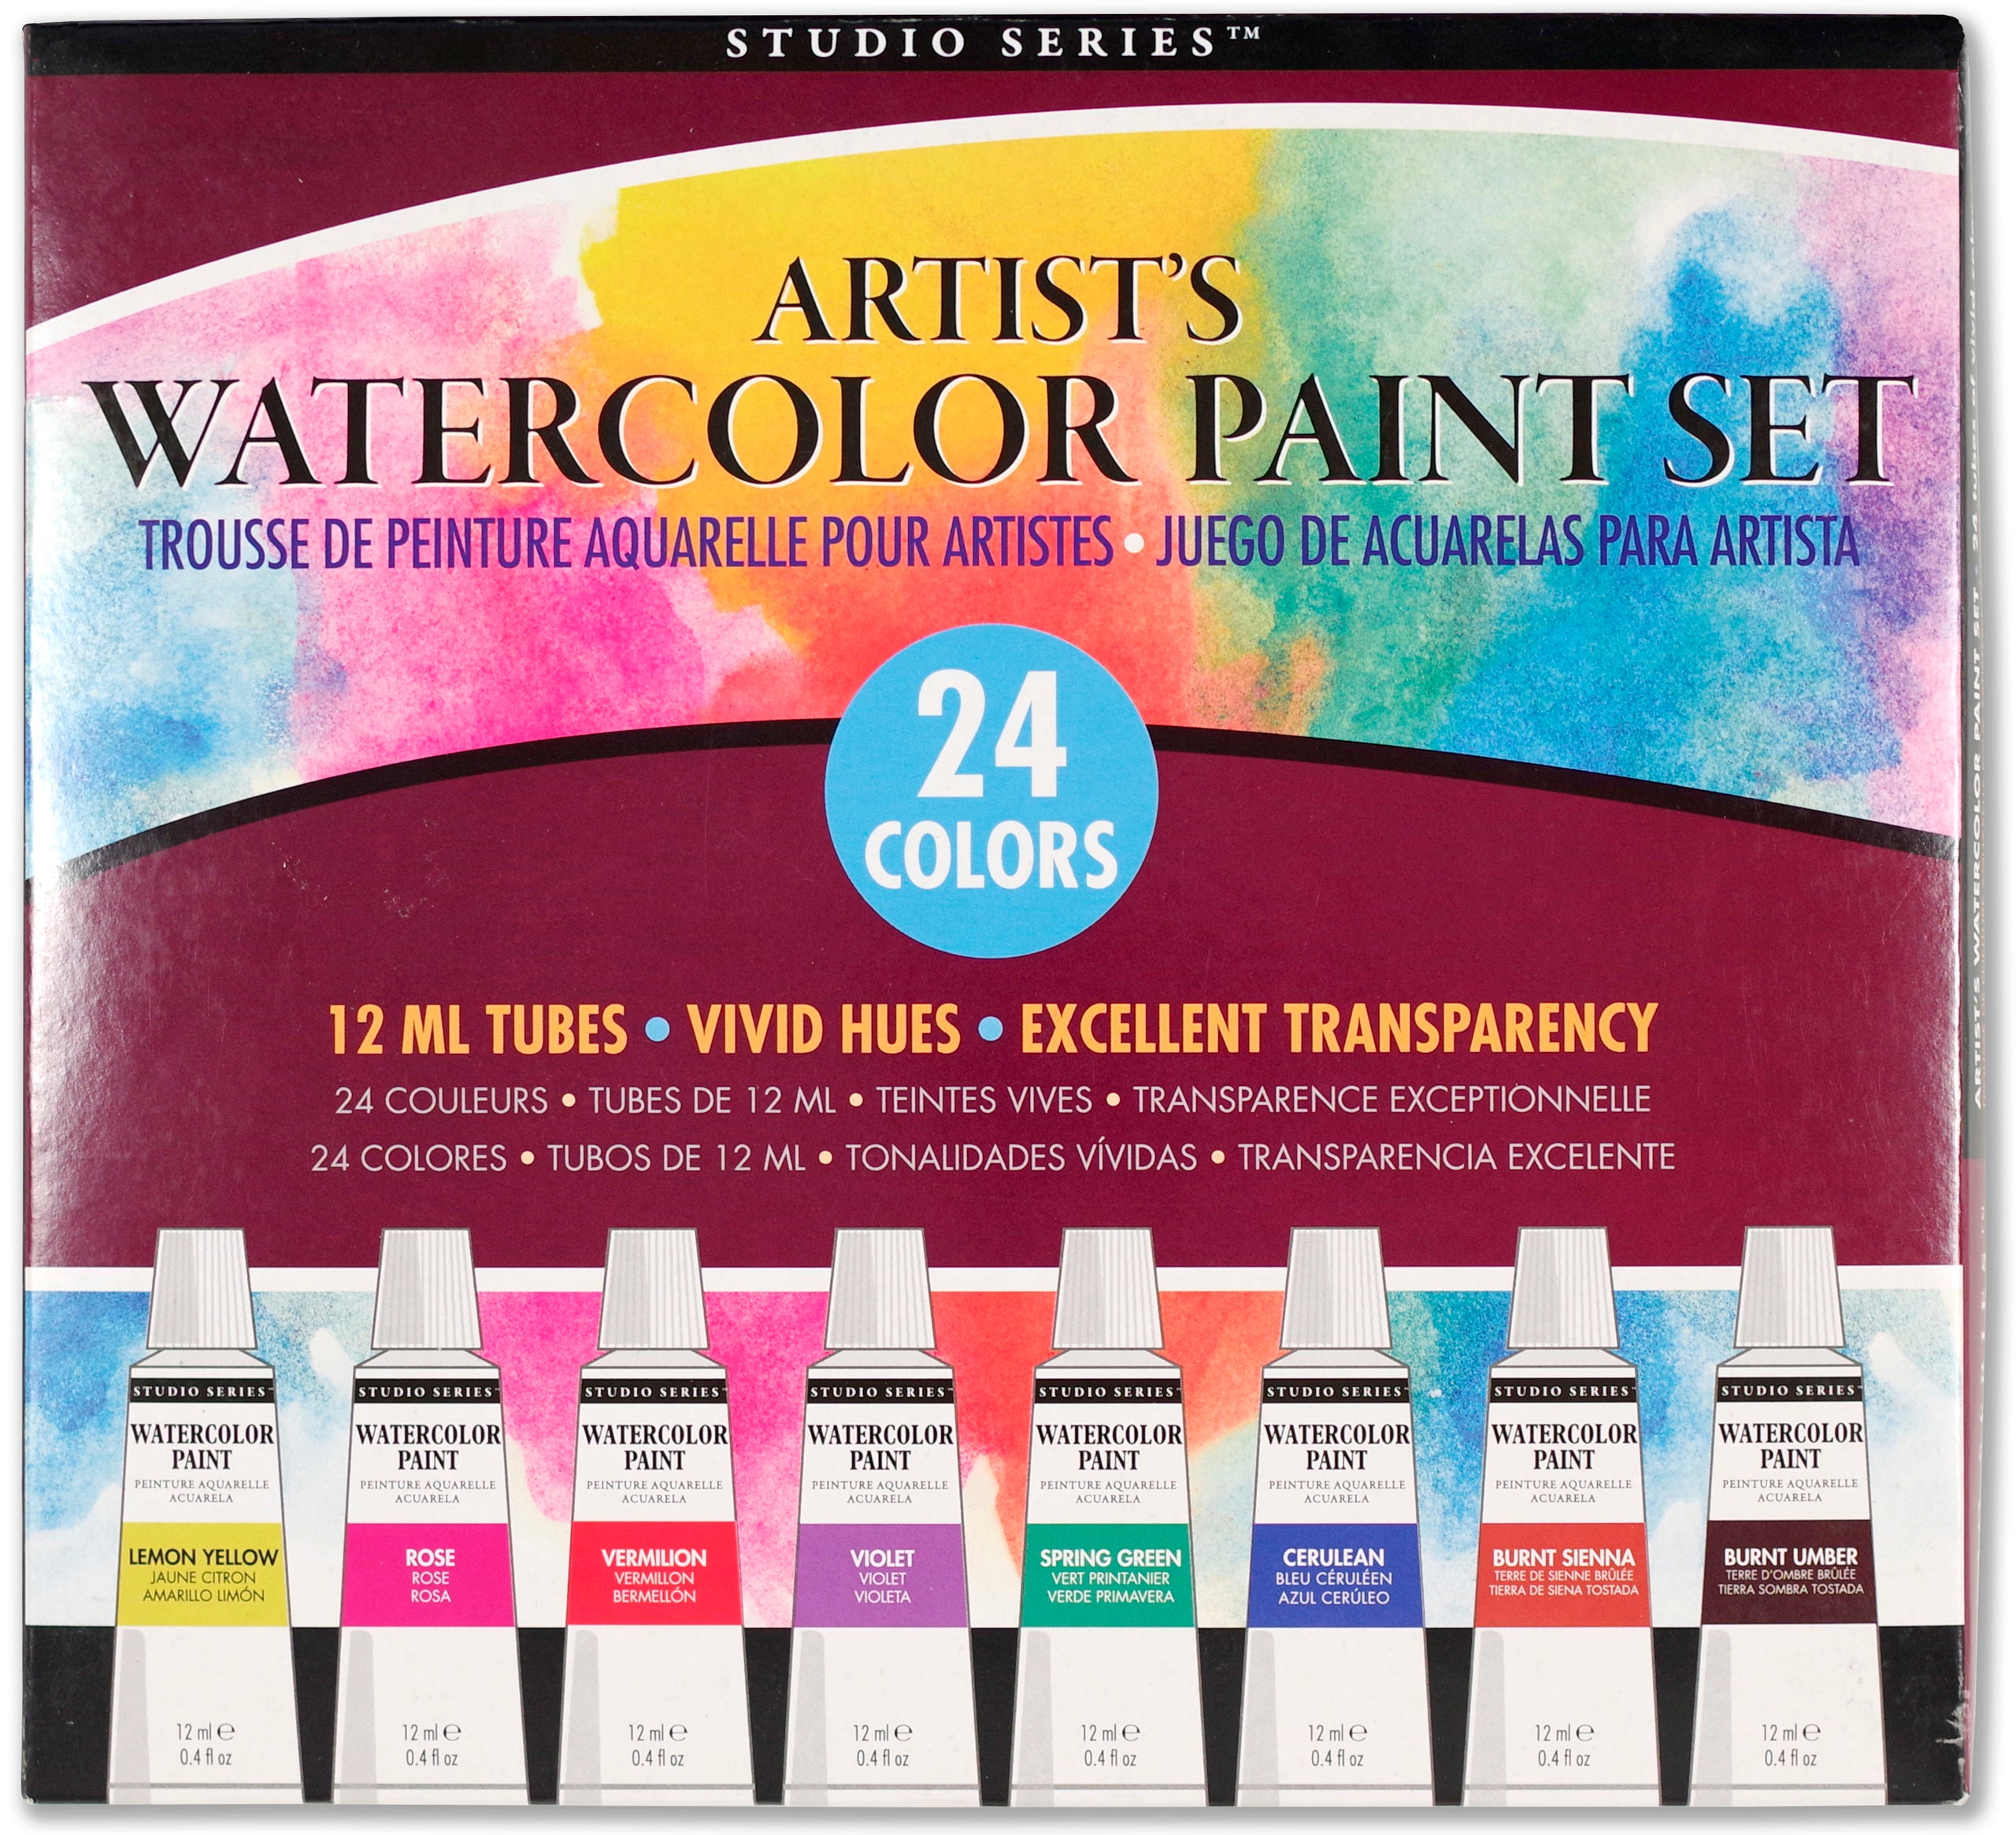 Artist's Watercolor Paint Set - 24 Colors    